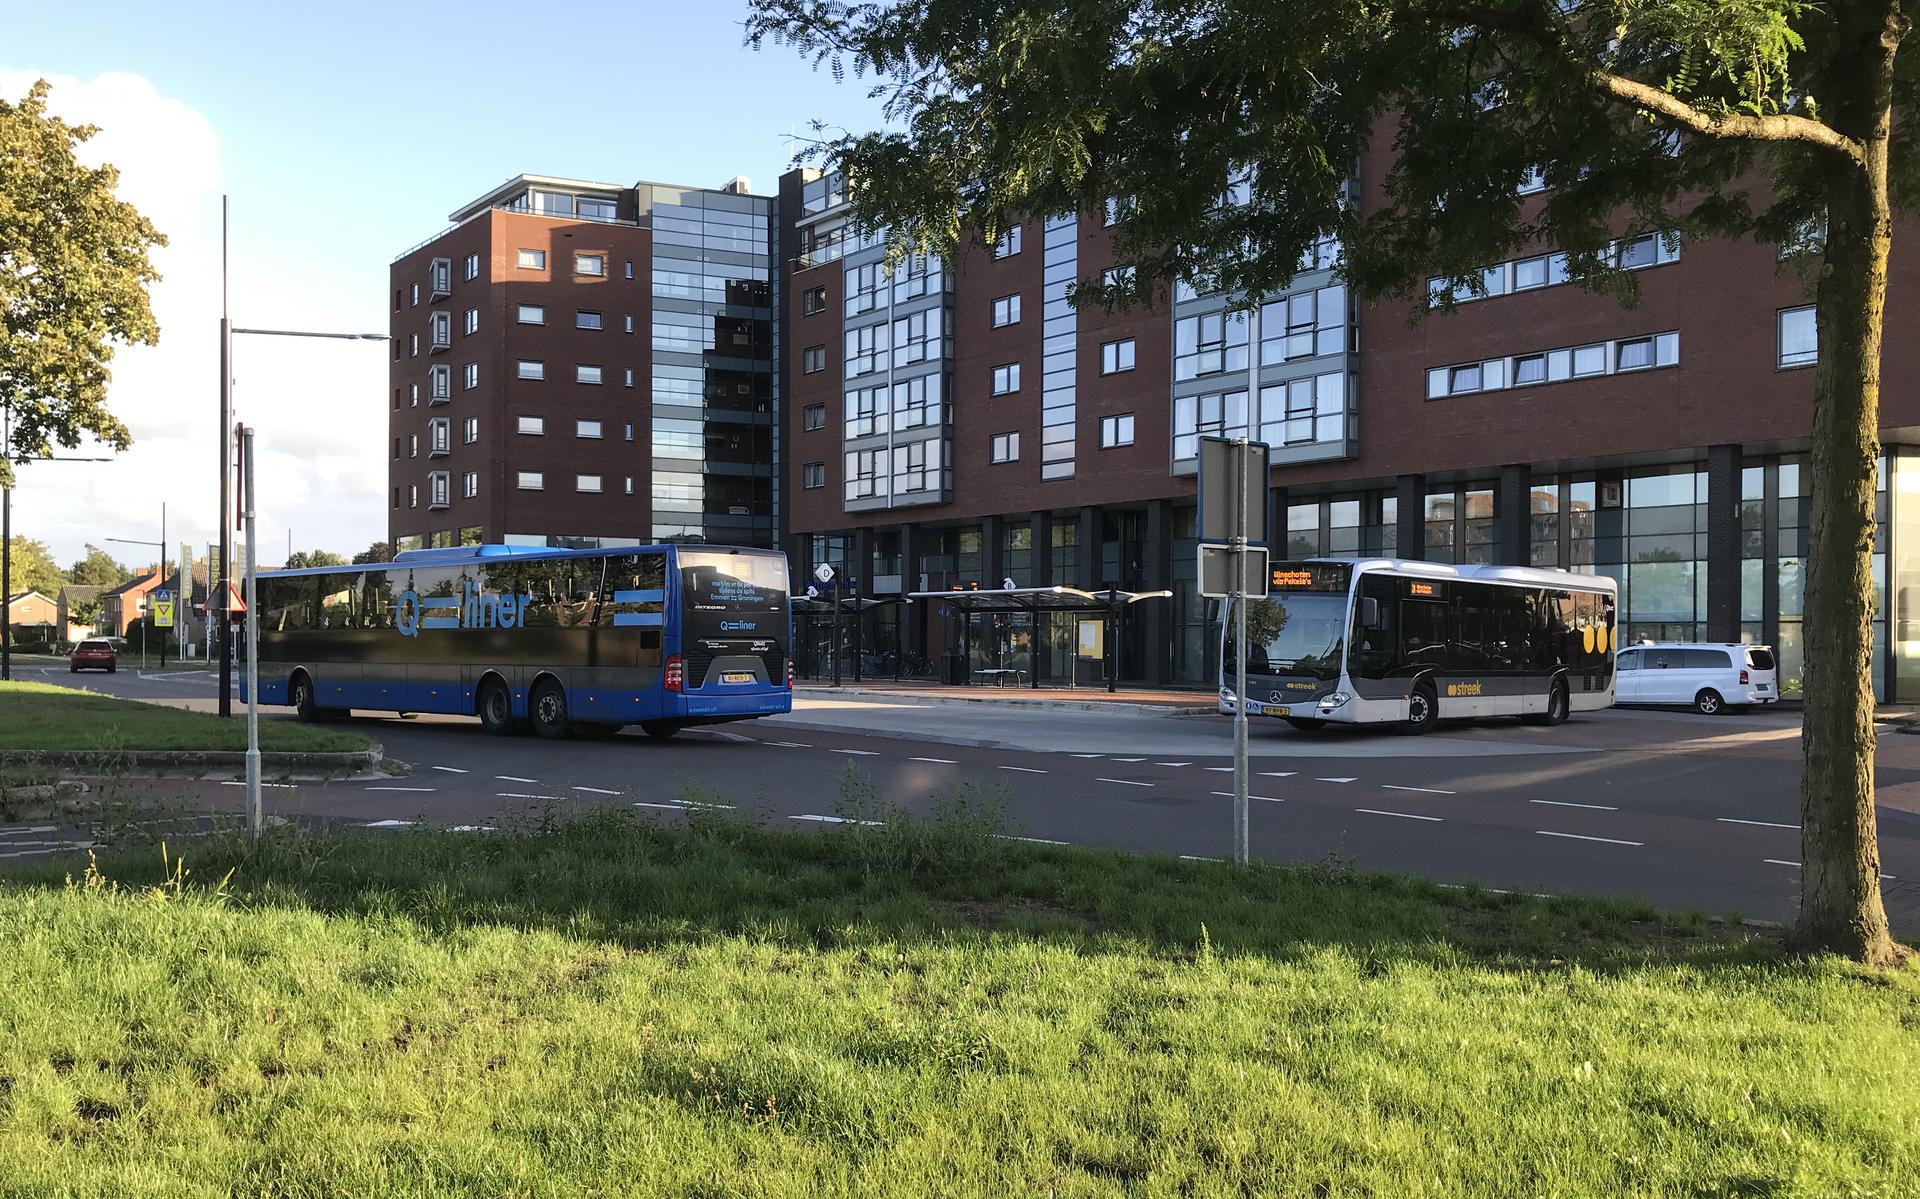 Buurtbus 505 van Buurtbusvereniging Oostermoer vertrok altijd vanaf de bushalte in Stadskanaal. Voortaan moeten busreizigers met de lijnbus.